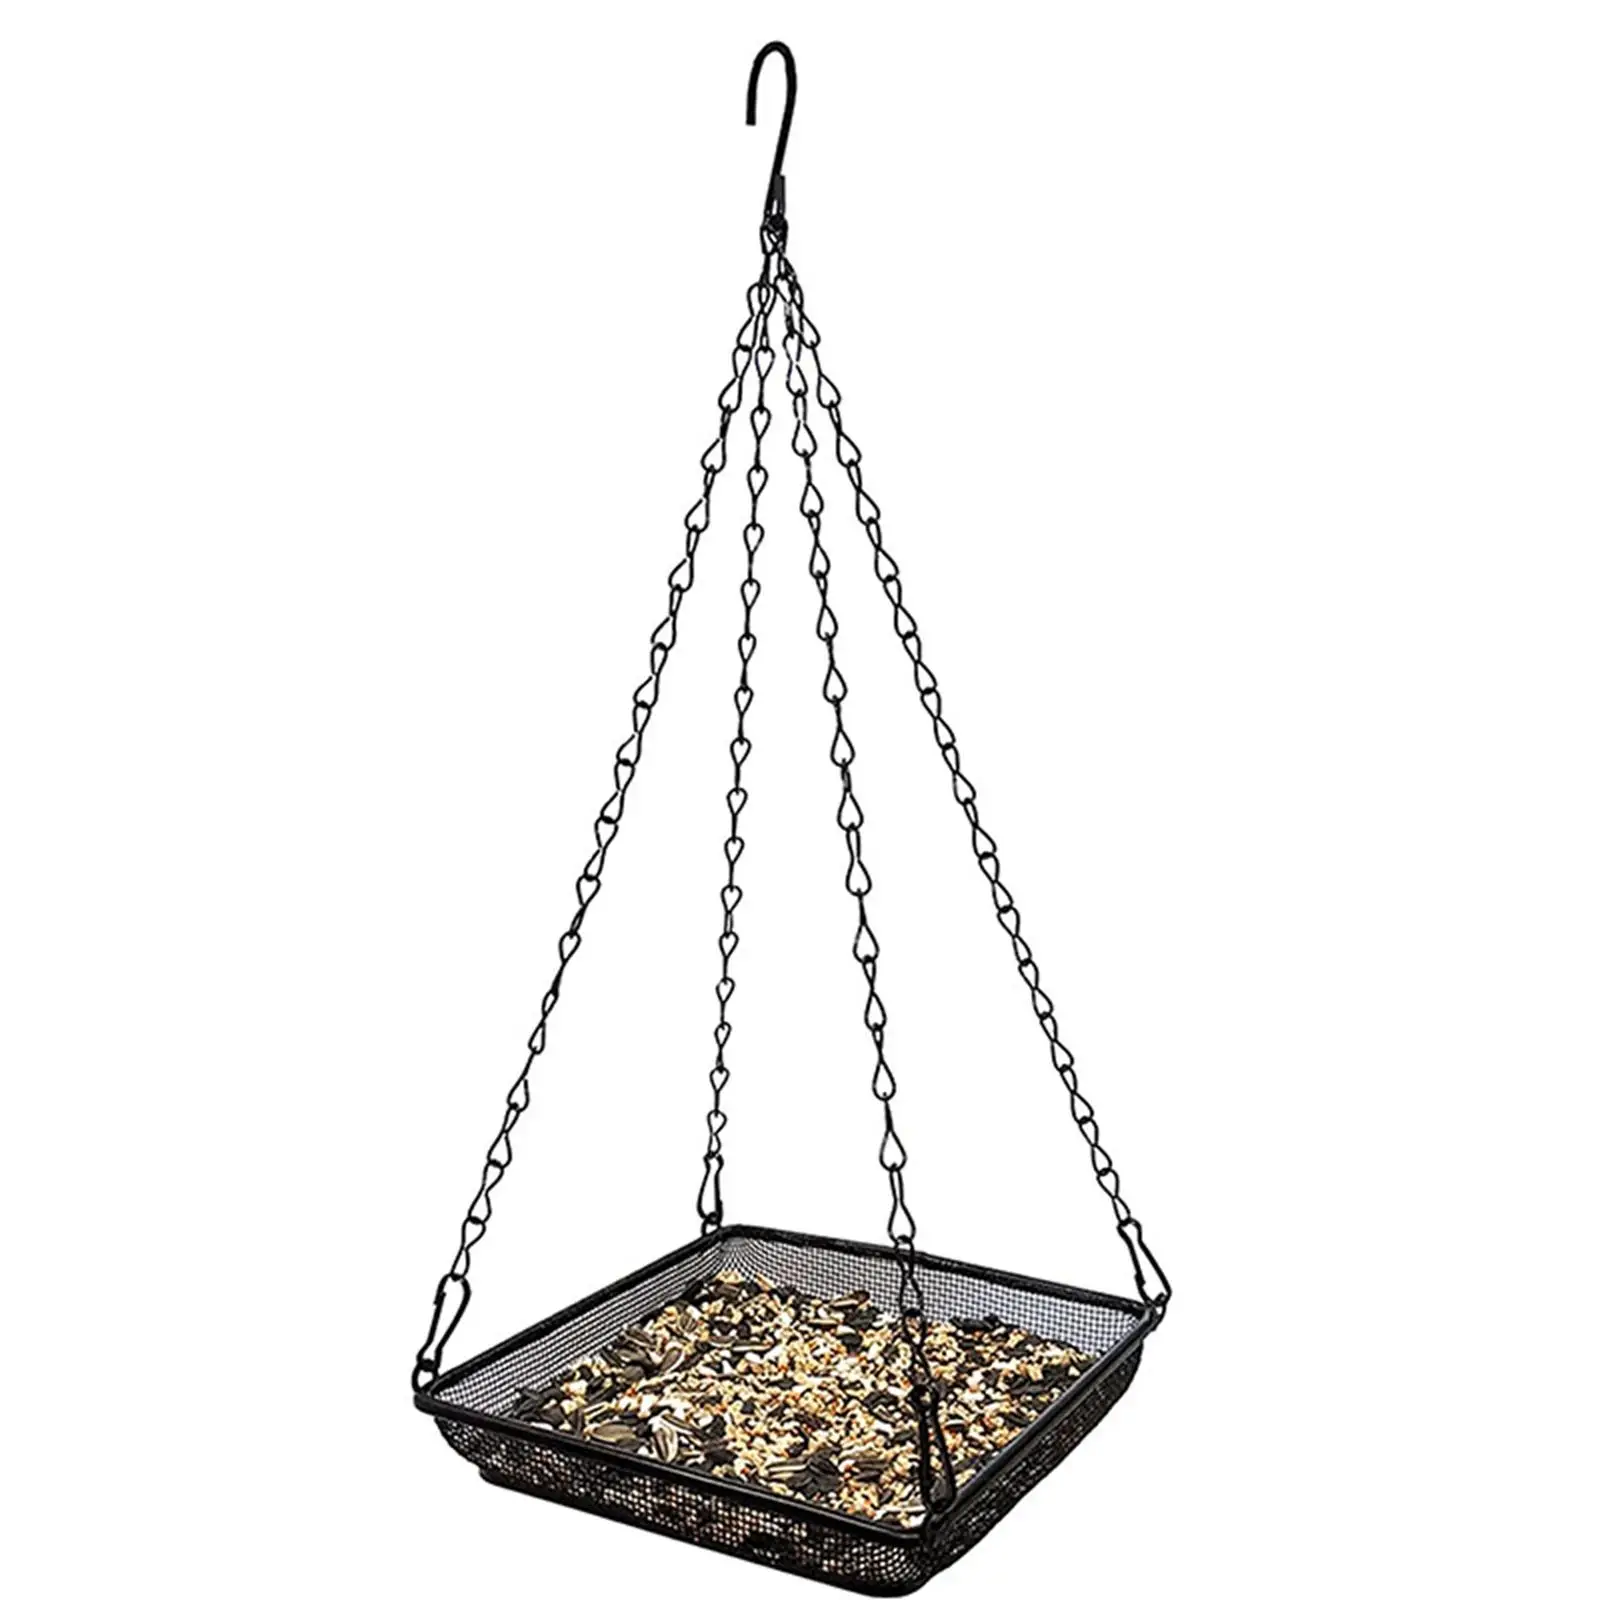 Iron Hanging Bird Feeder Tray Food Platform Durable Chains for Garden Porch